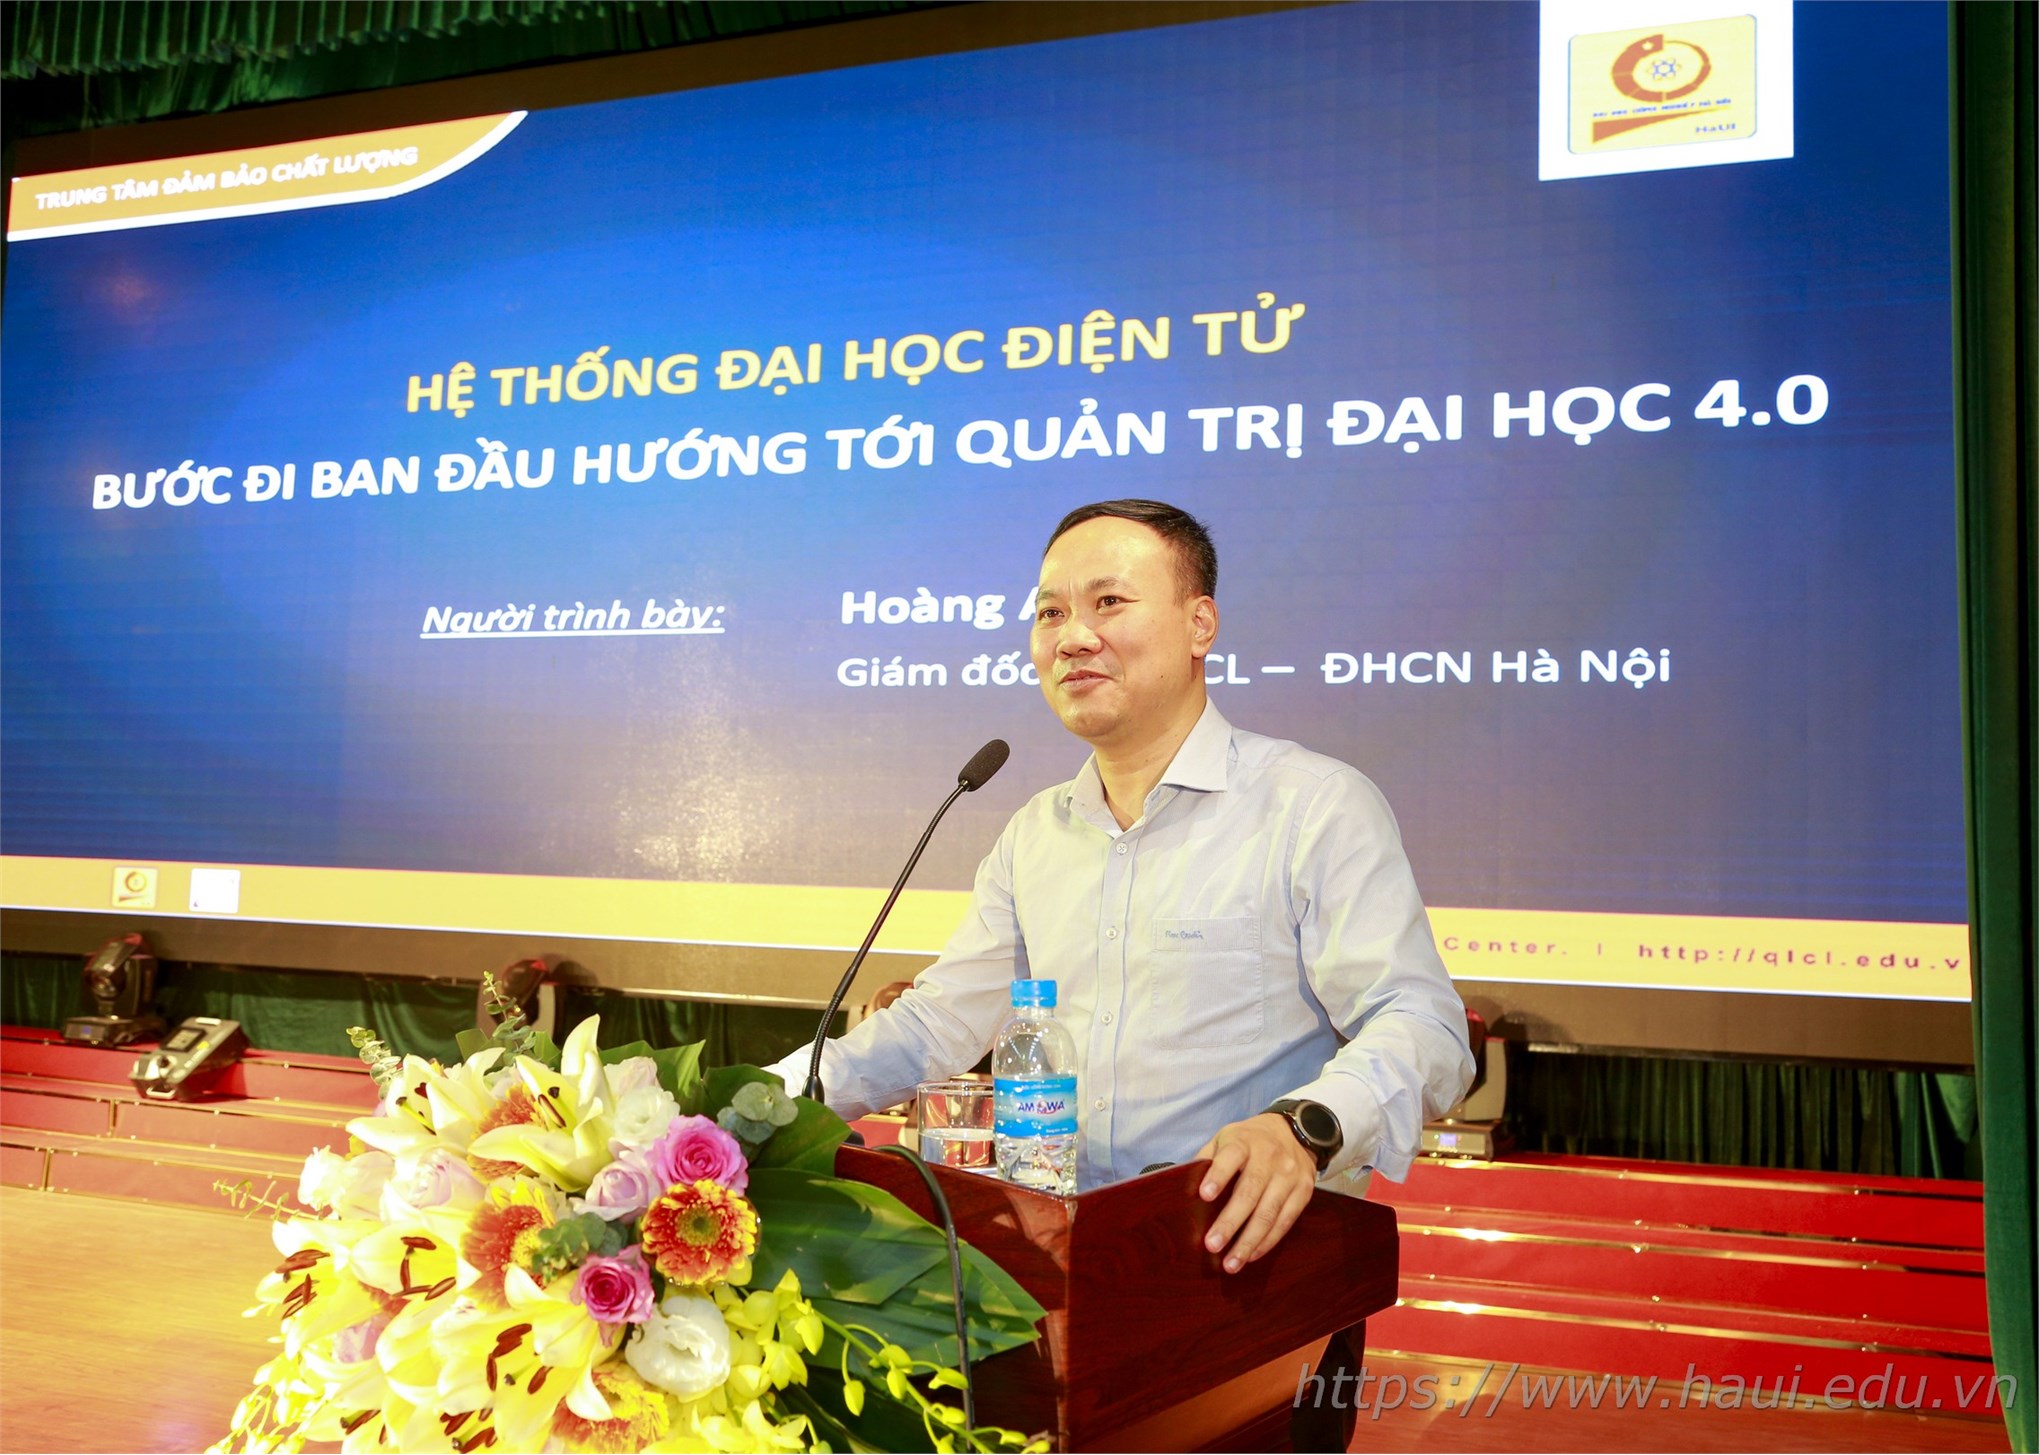 Đại học Công nghiệp Hà Nội tổ chức Hội nghị tổng kết và gặp mặt hơn 100 doanh nghiệp